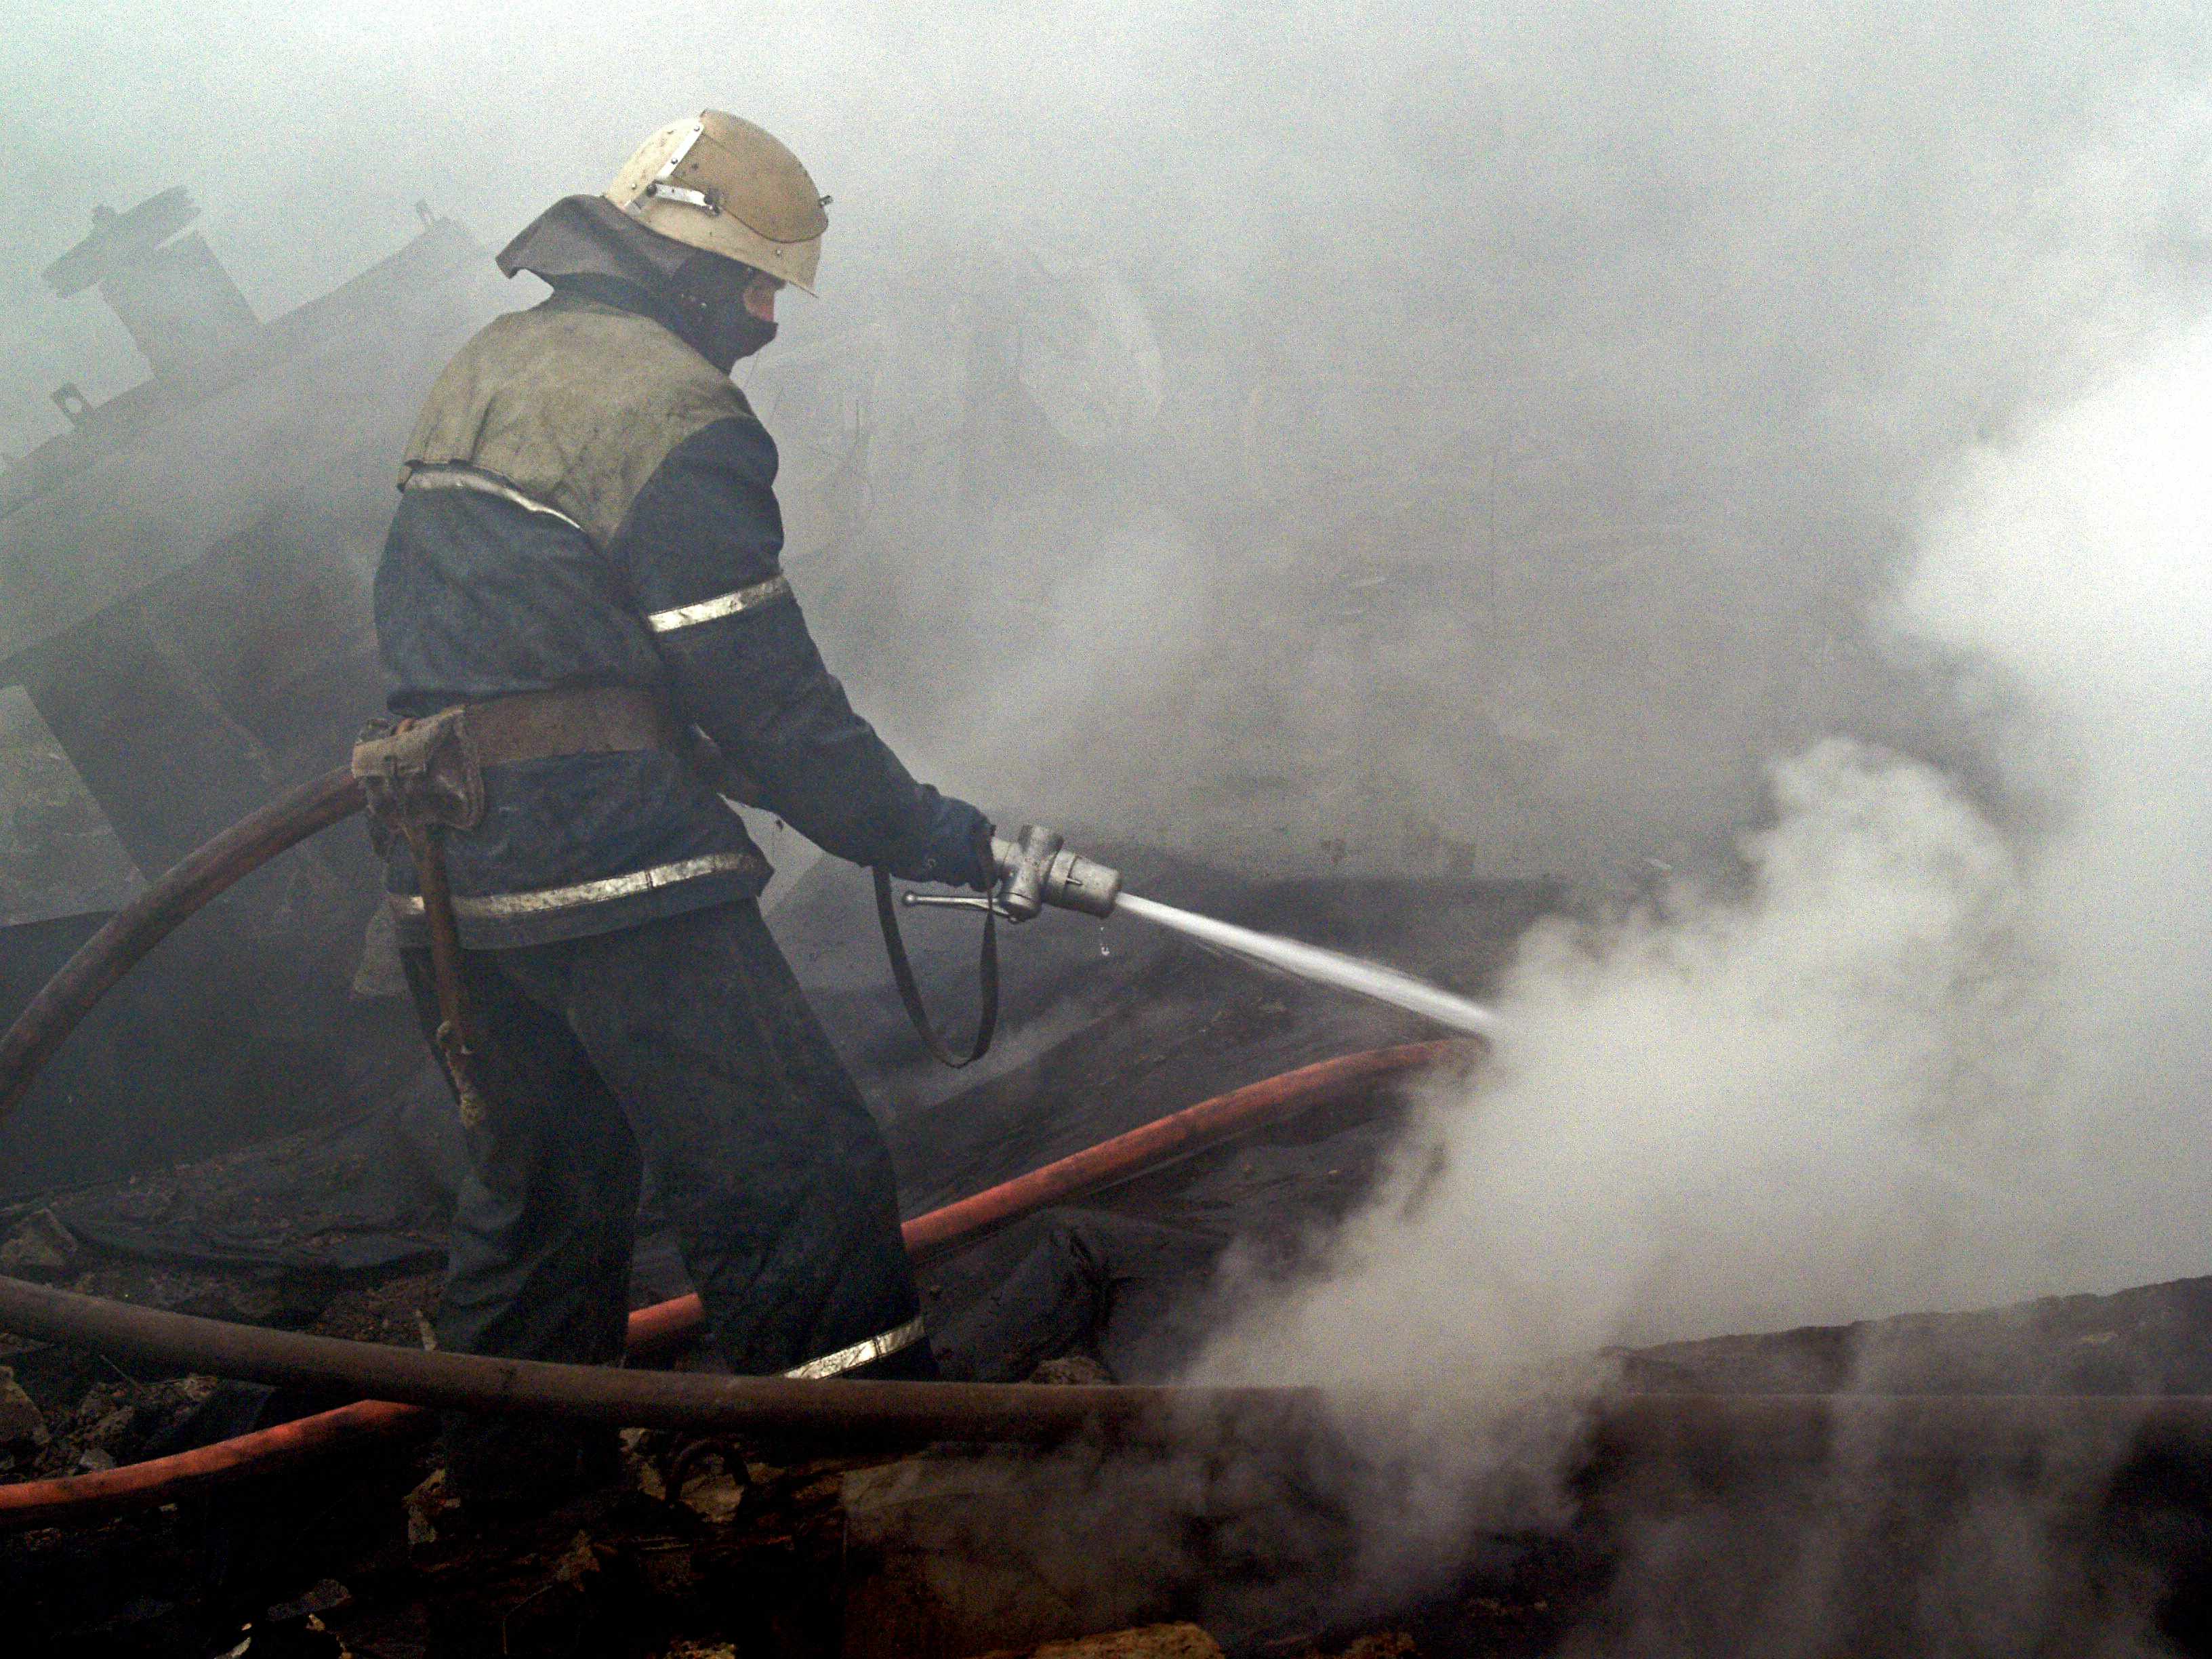 Сегодня, 31 марта, в 14:00 в оперативно-спасательную службу Закарпатья сообщили о пожаре в подвале пятиэтажного жилого дома в г. Мукачево на улице Индустриальной.